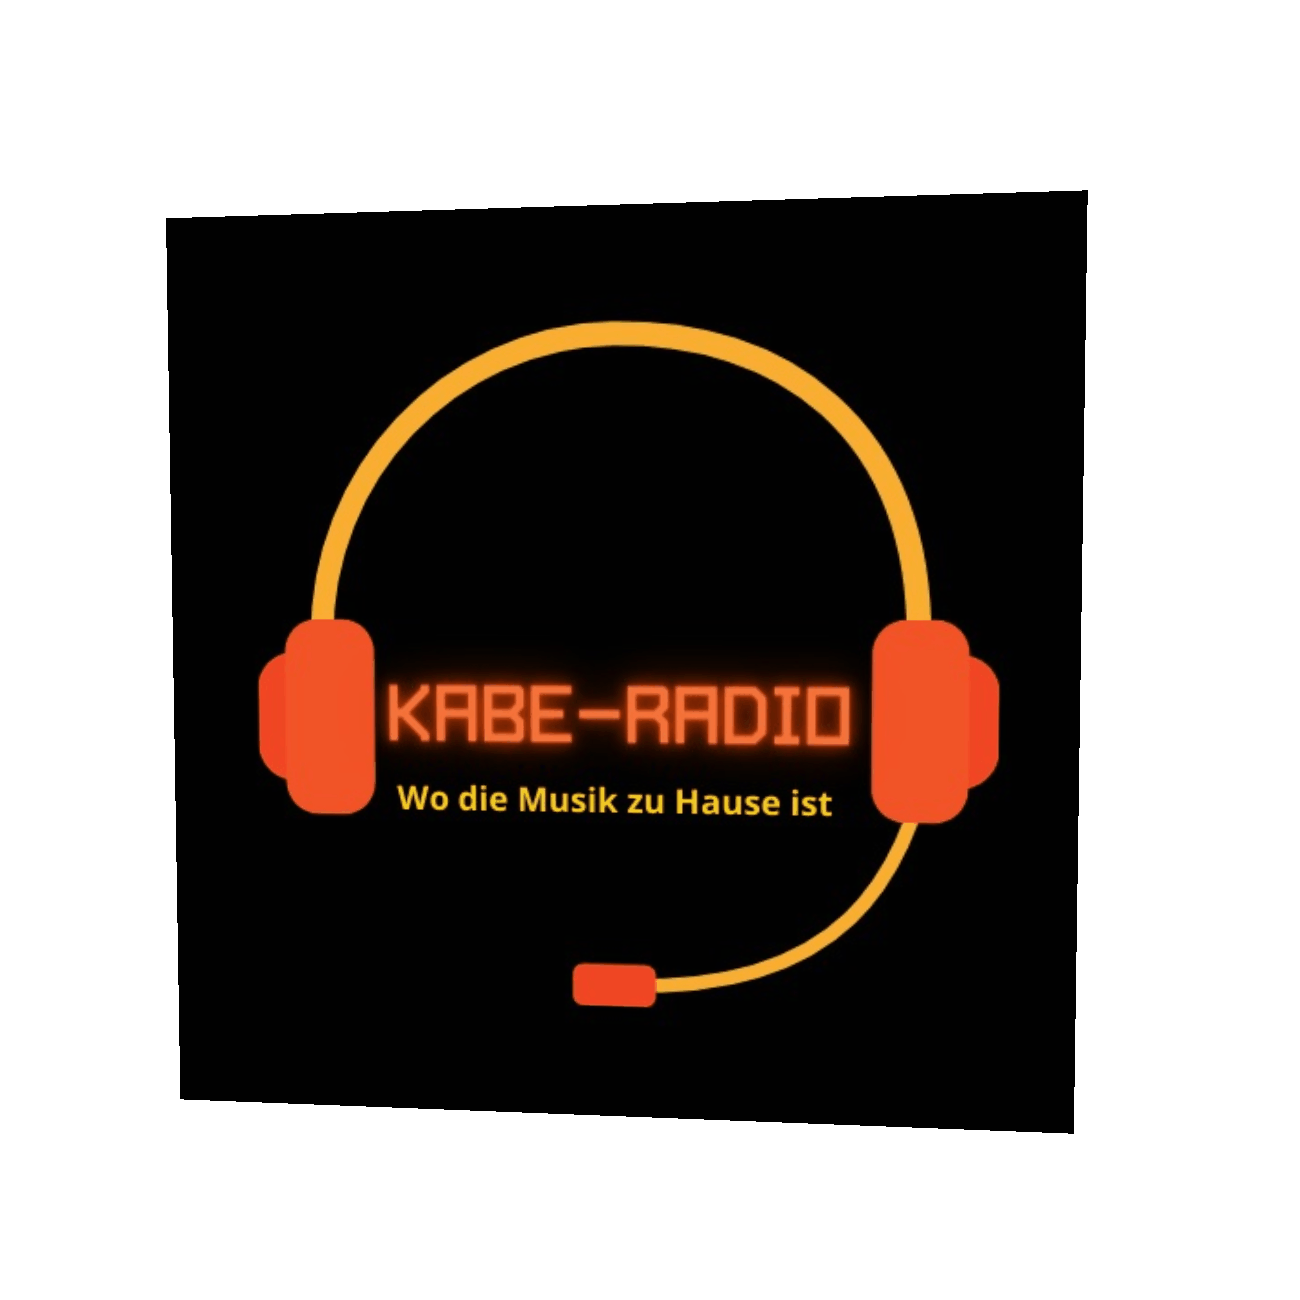 (c) Kabe-radio.de